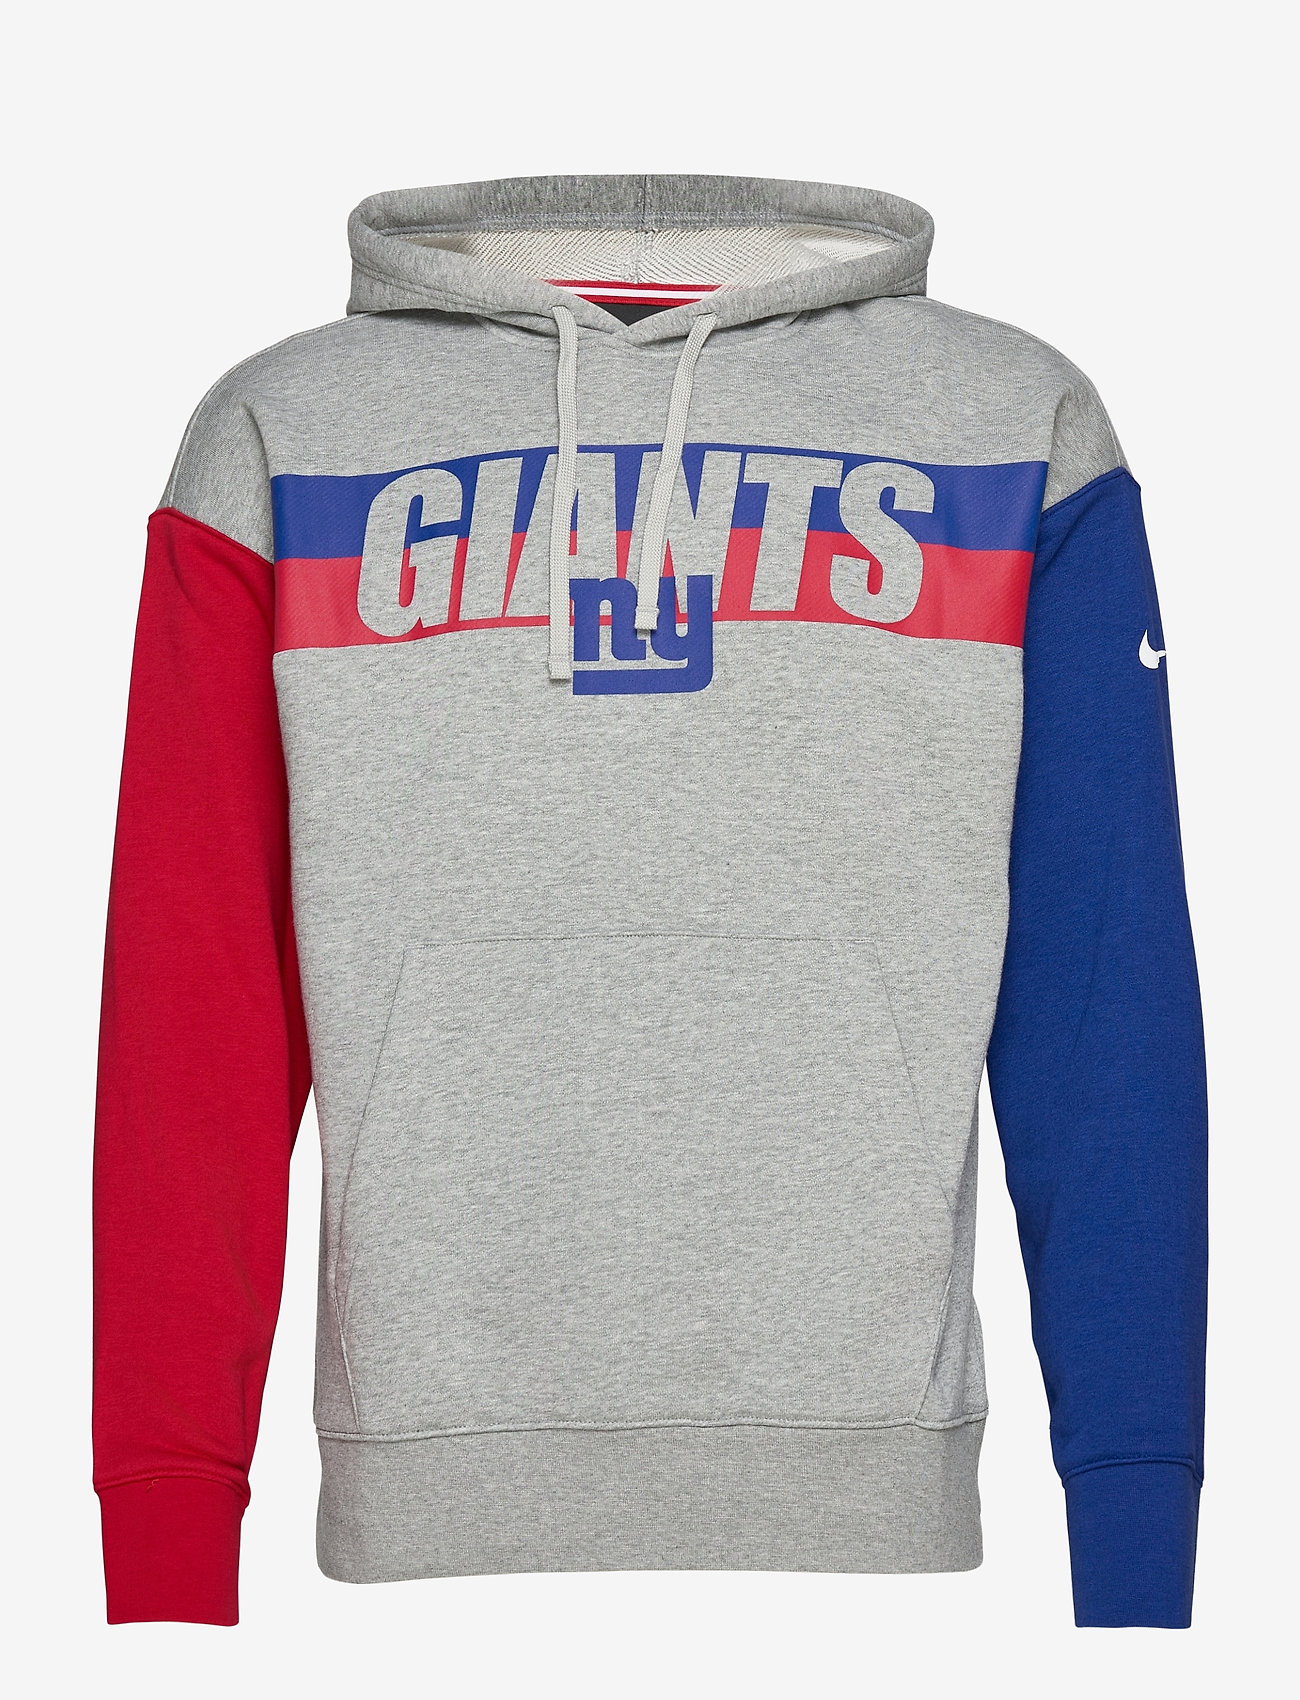 ny giants zippered sweatshirt